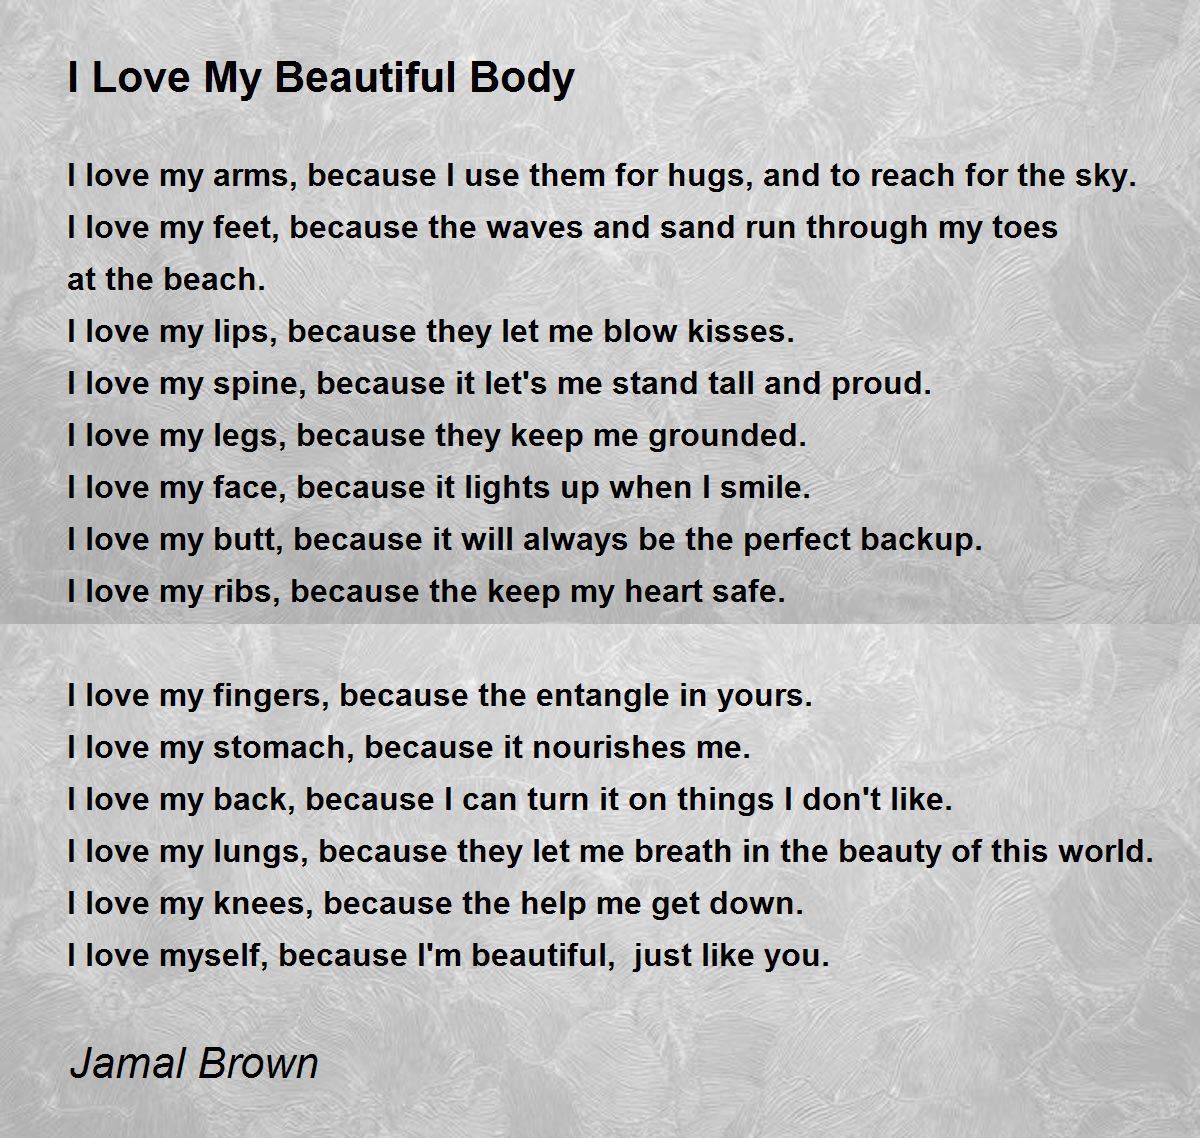 I Love My Beautiful Body - I Love My Beautiful Body Poem by Jamal Brown